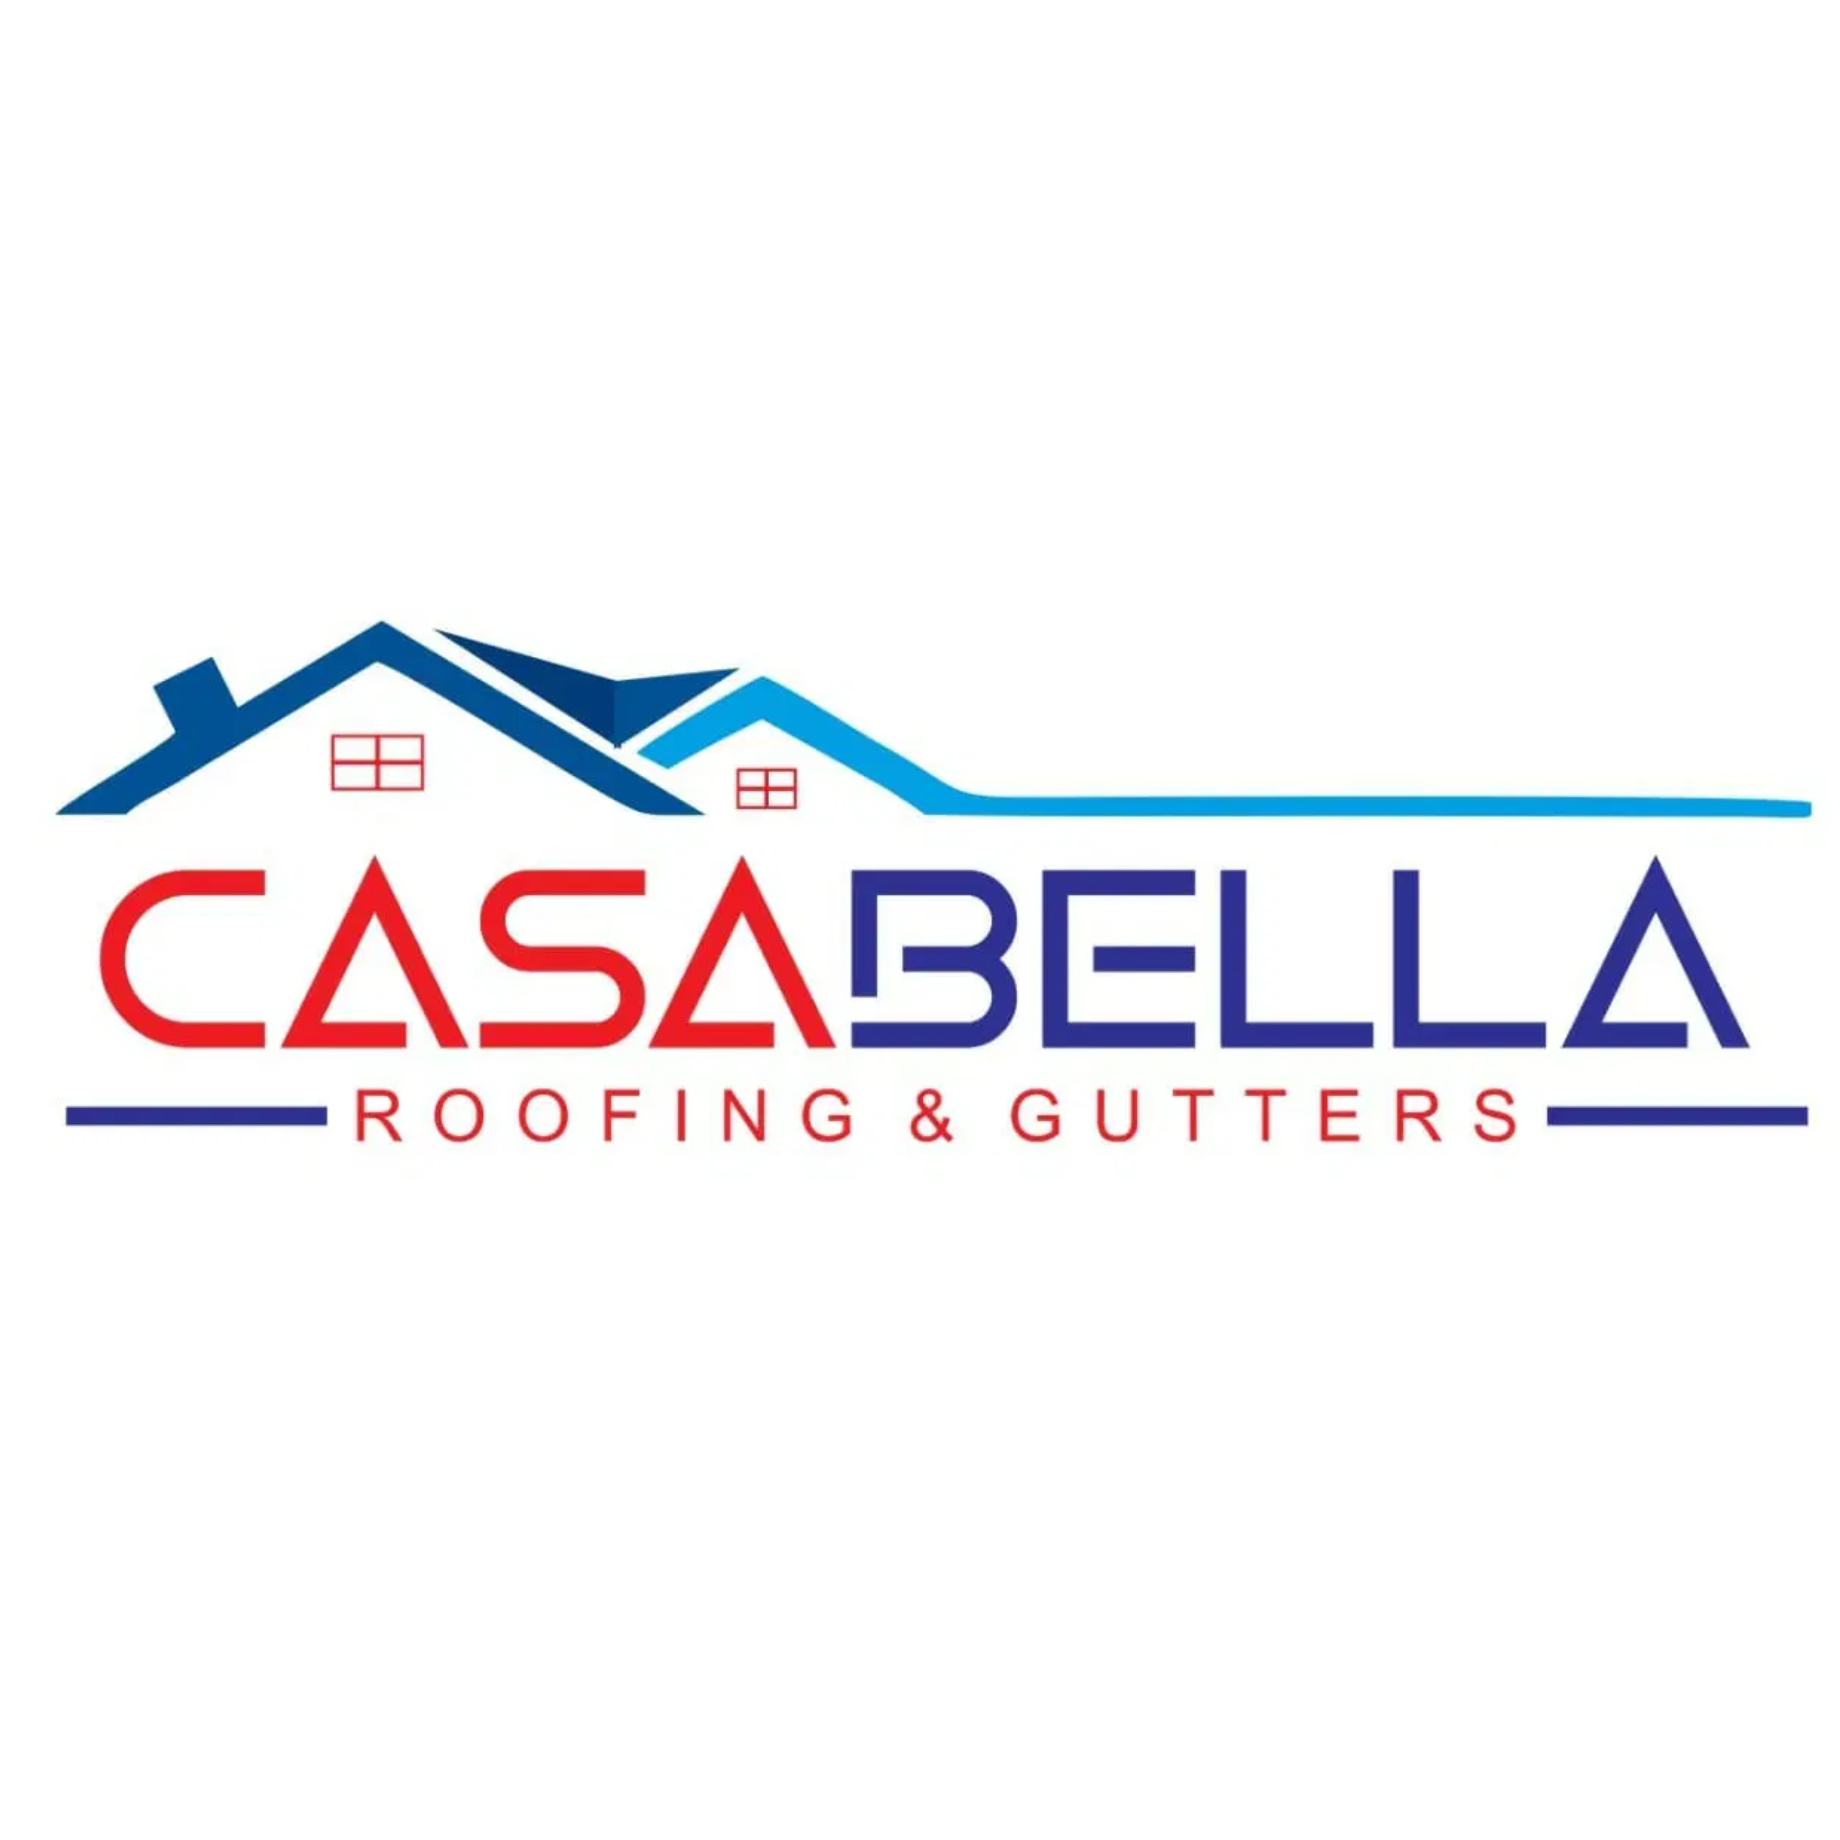 Casabella Roofing